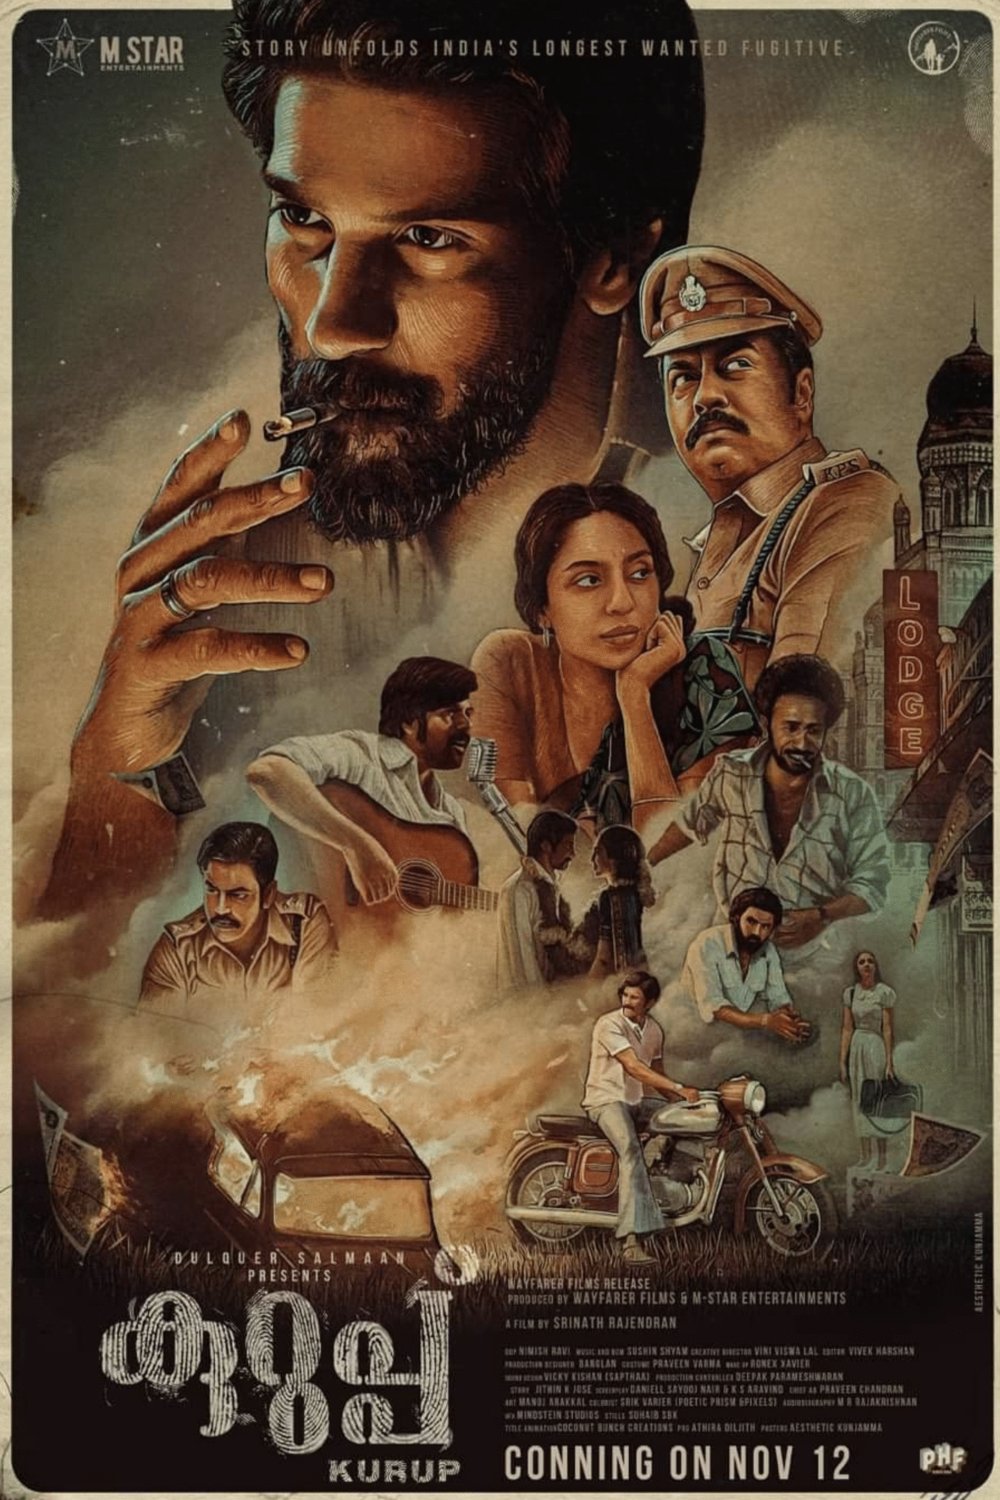 Malayalam poster of the movie Kurup